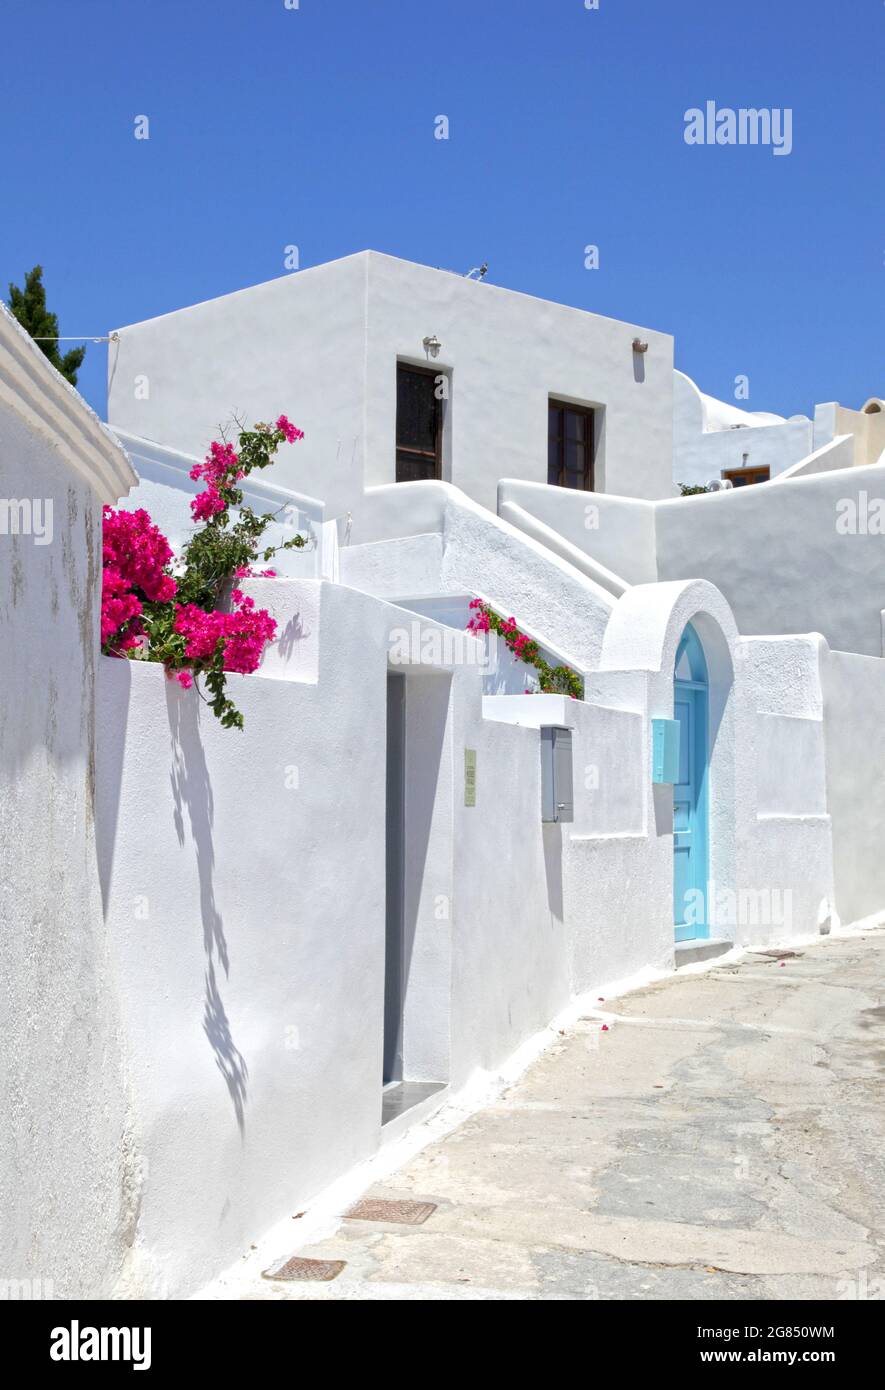 Weiße Wände mit einer blauen Tür im traditionellen Dorf Megalochori, Santorini, Griechenland. Stockfoto